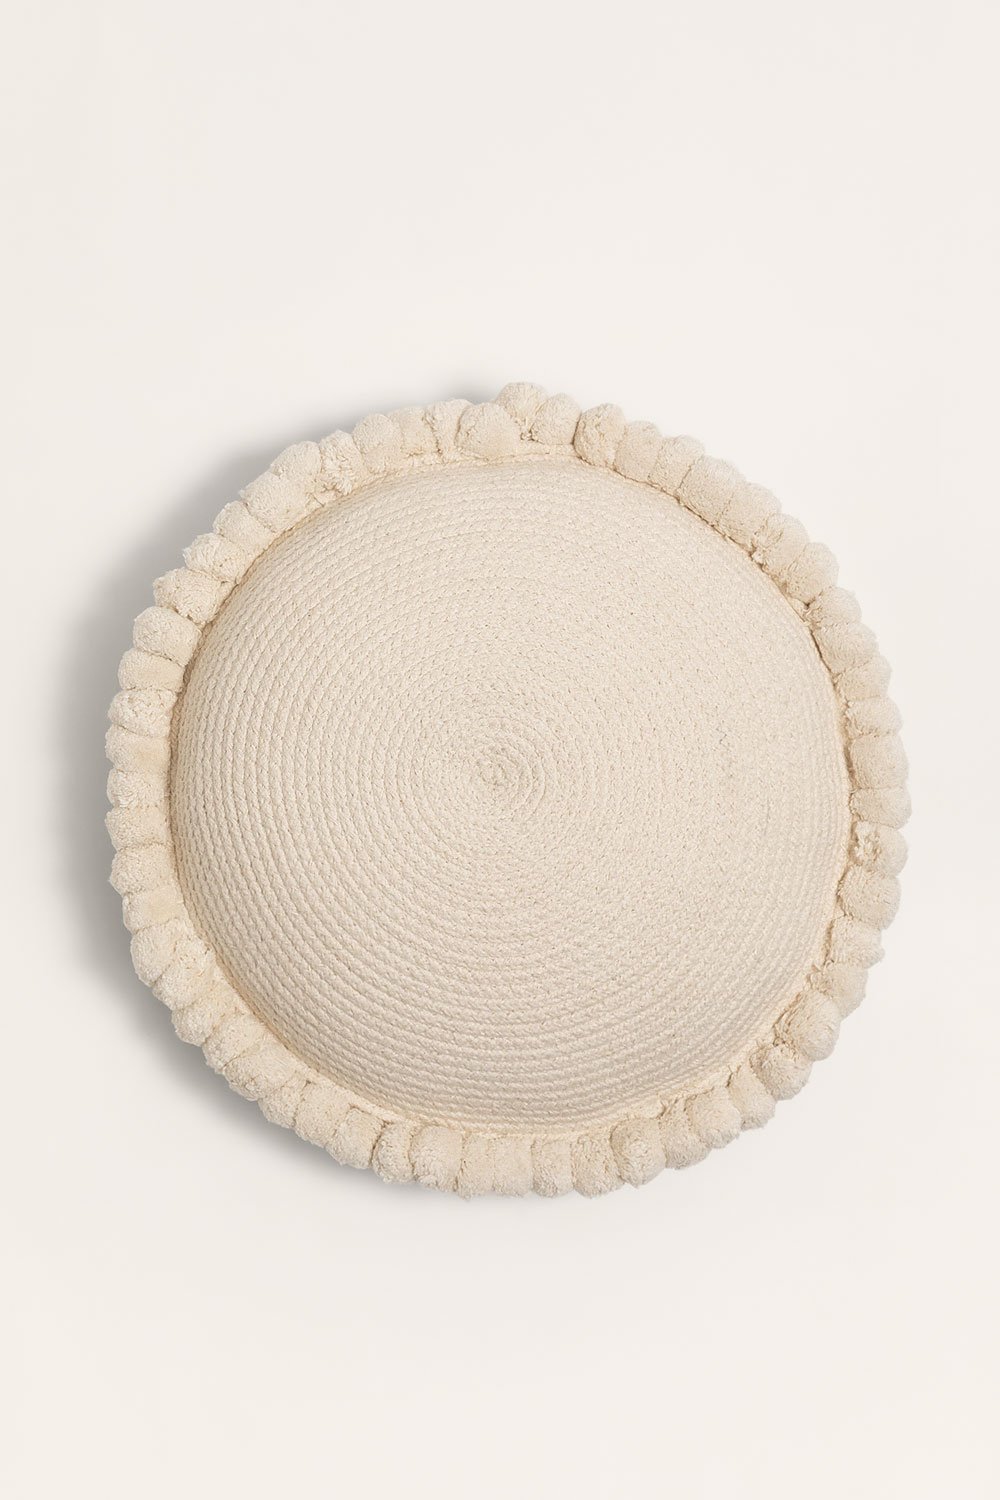 Cuscino rotondo in cotone intrecciato Olets, immagine della galleria 1